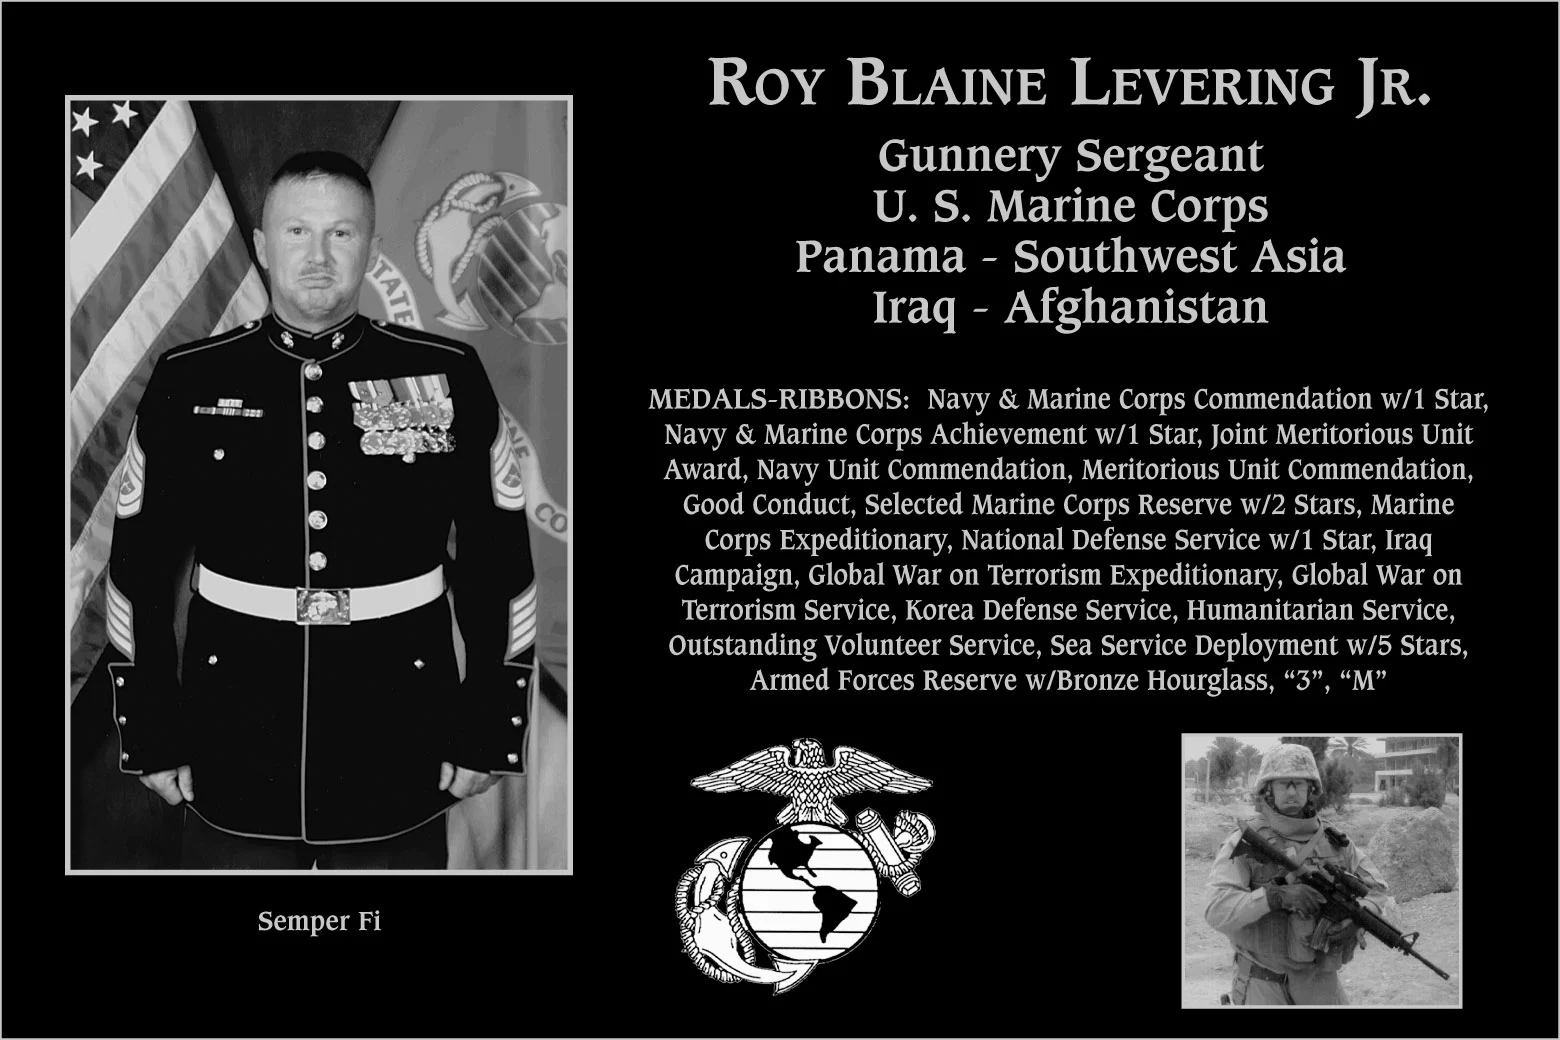 Roy Blaine Levering, jr